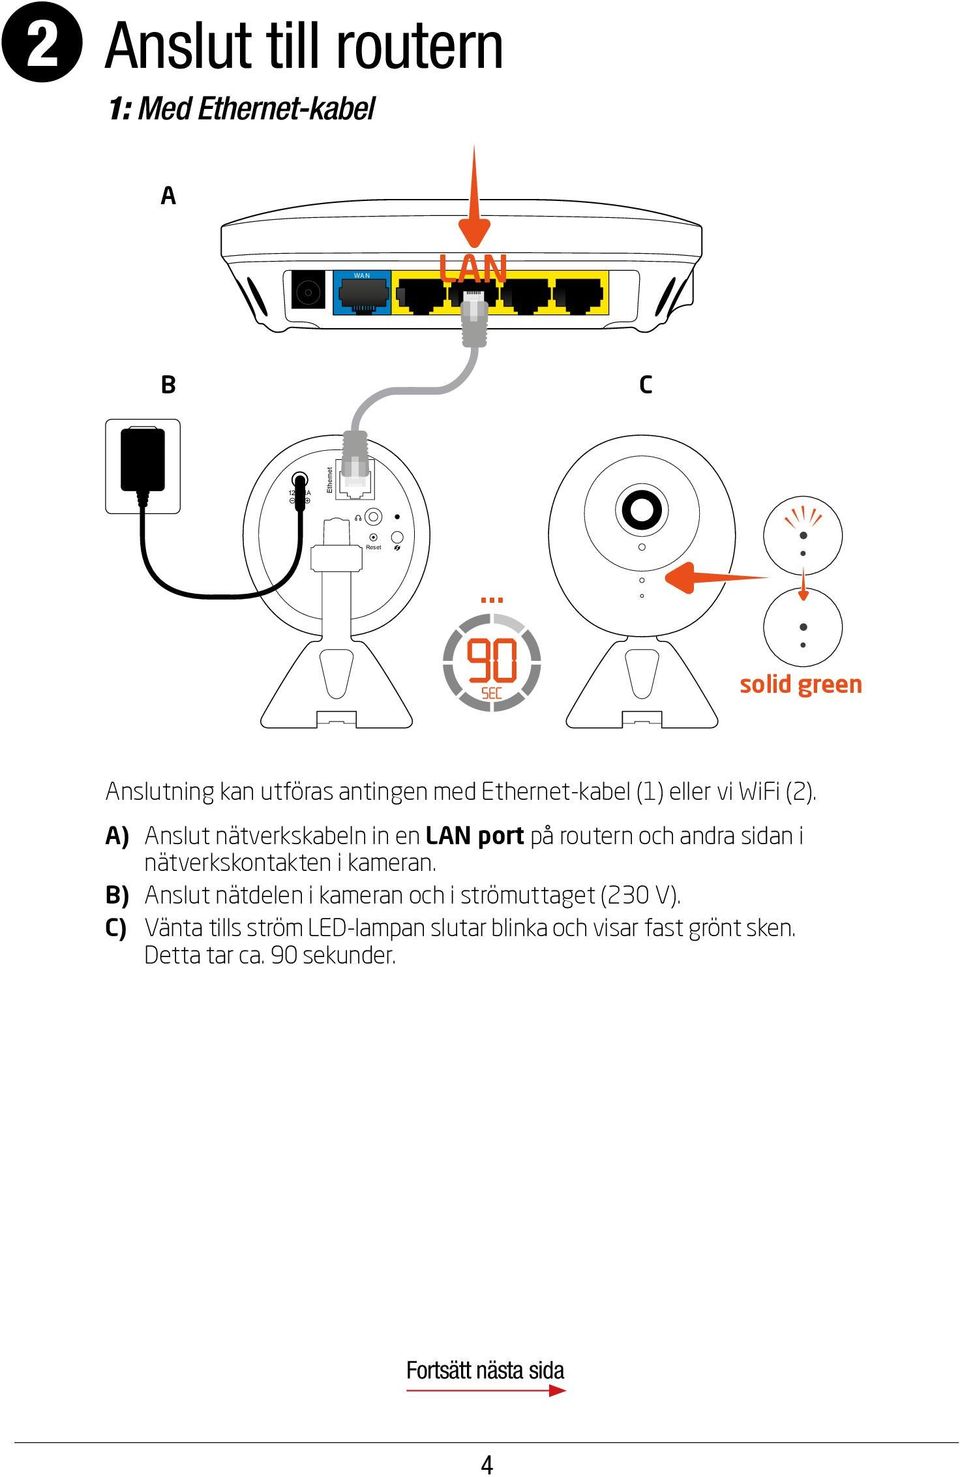 A) Anslut nätverkskabeln in en LAN port på routern och andra sidan i nätverkskontakten i kameran.